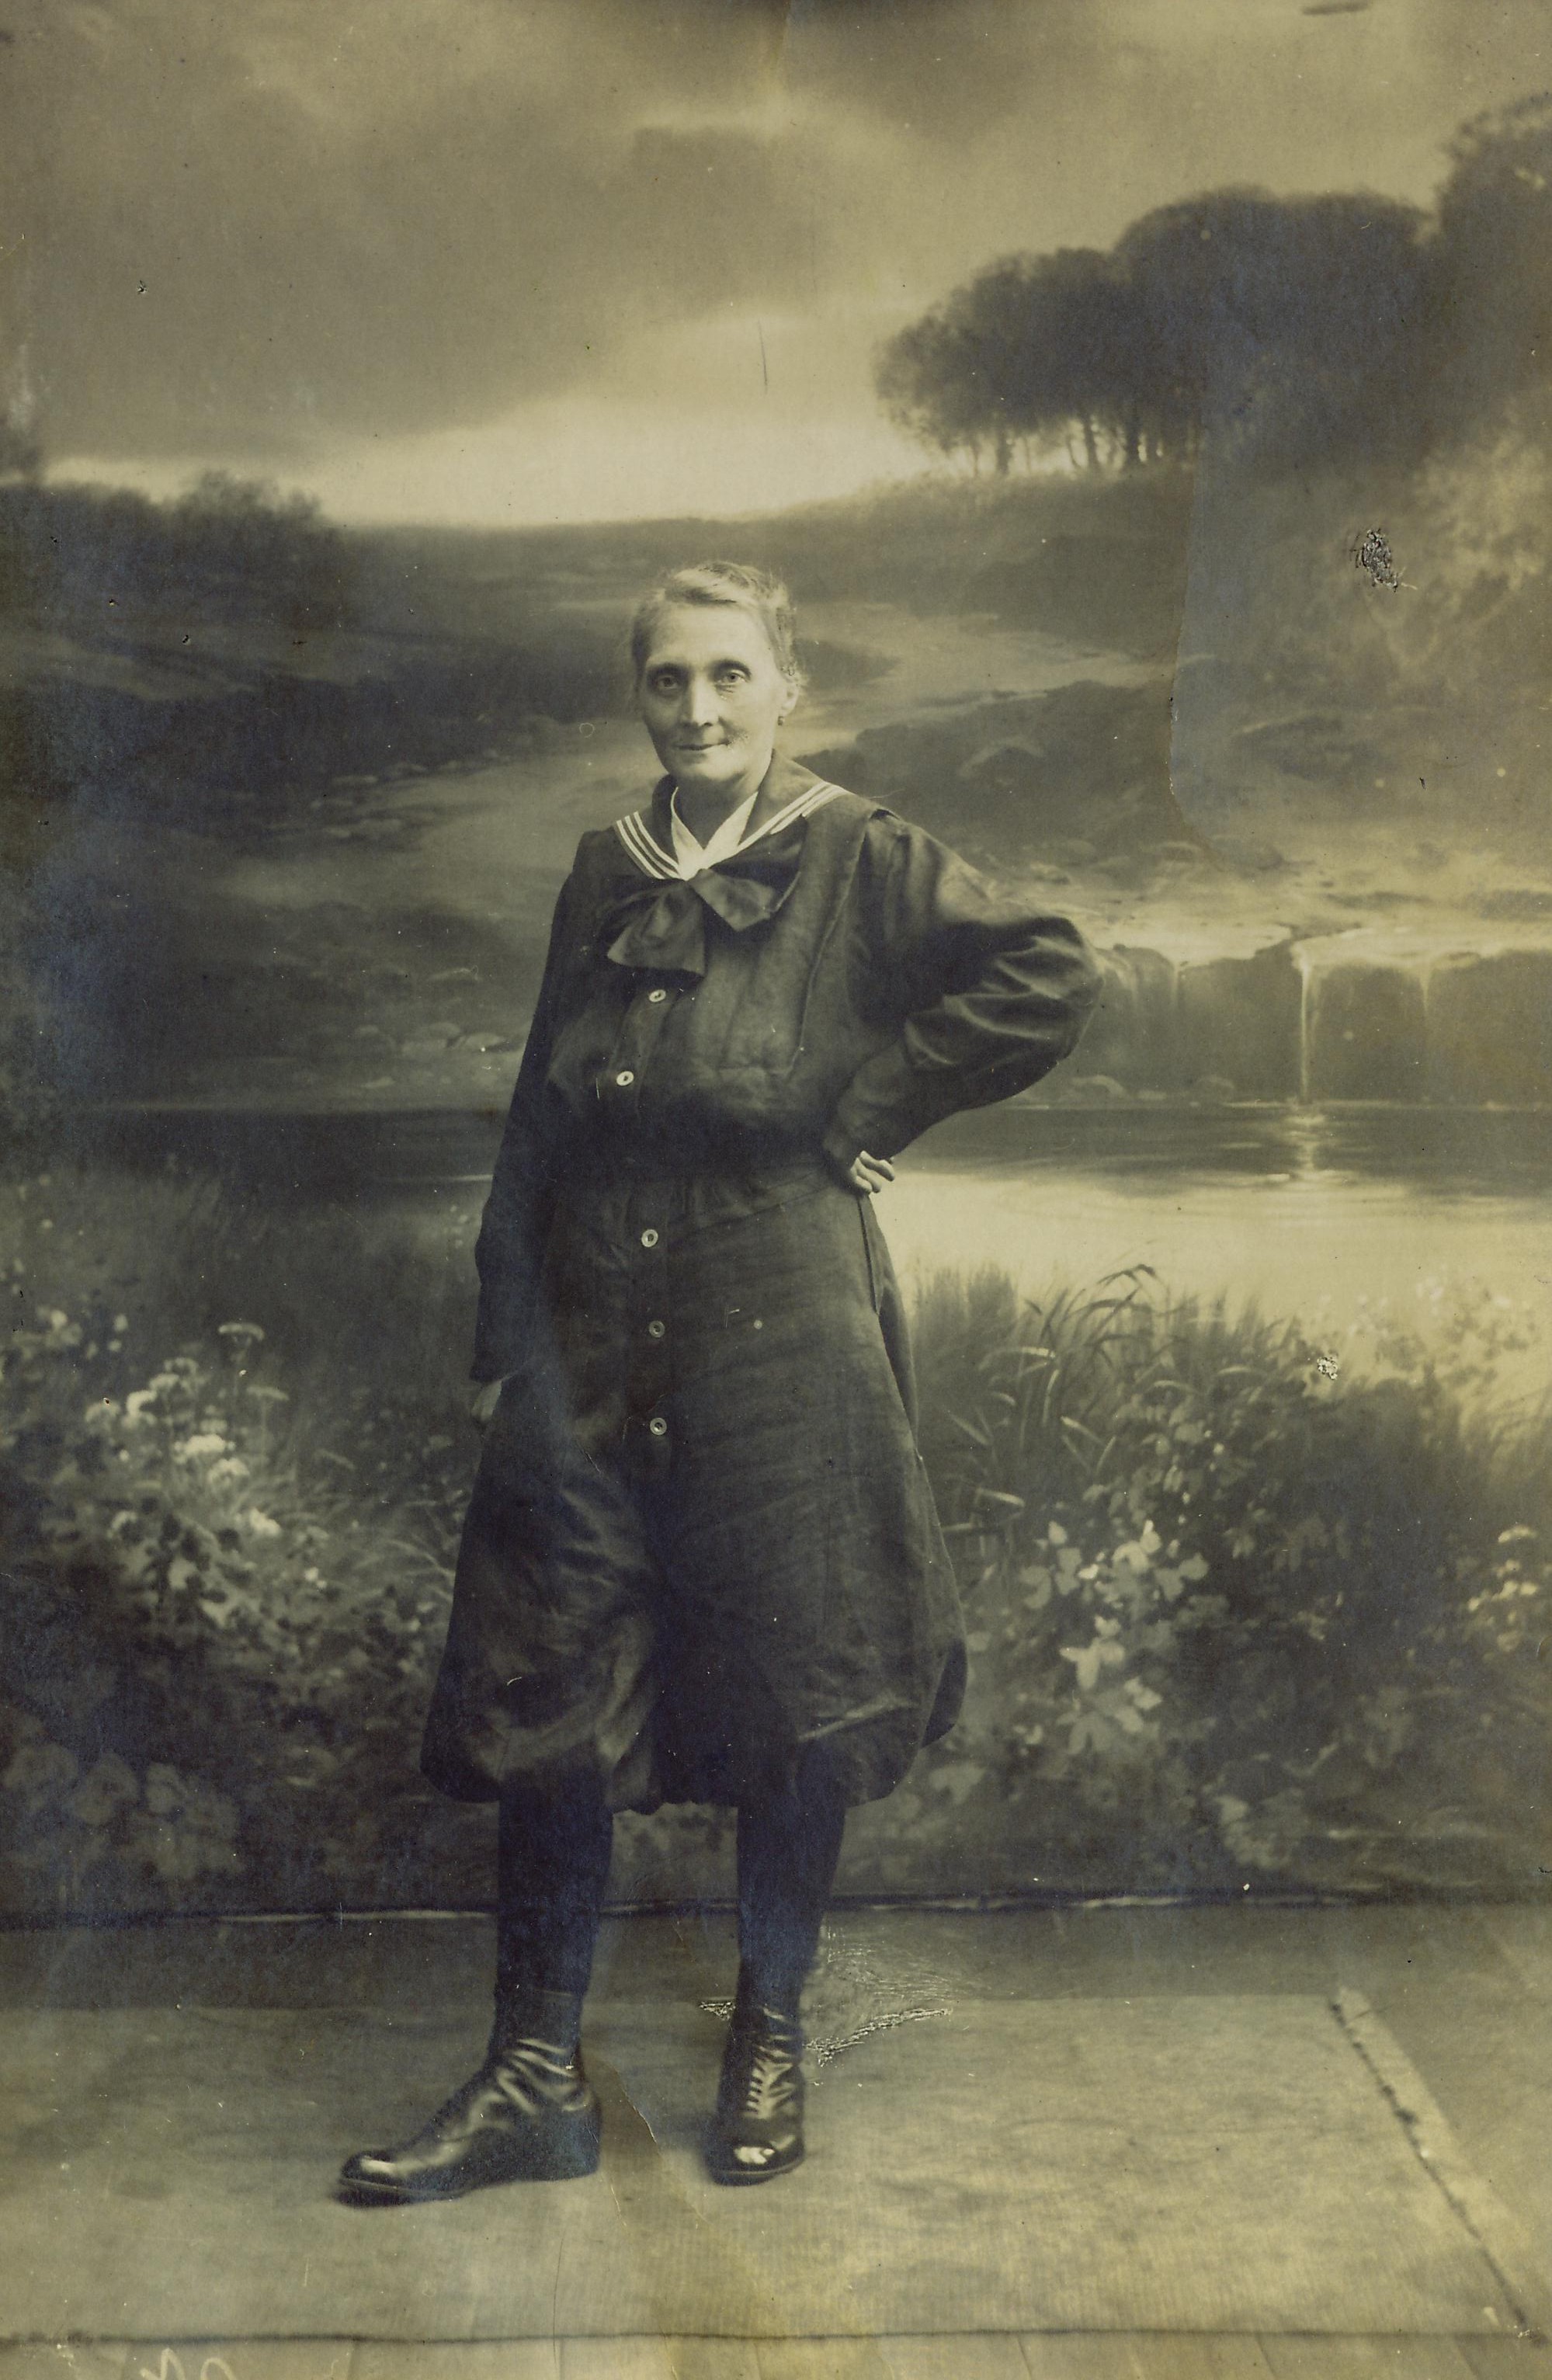 Pulvermagazinarbeiterin während des 1. Weltkrieges